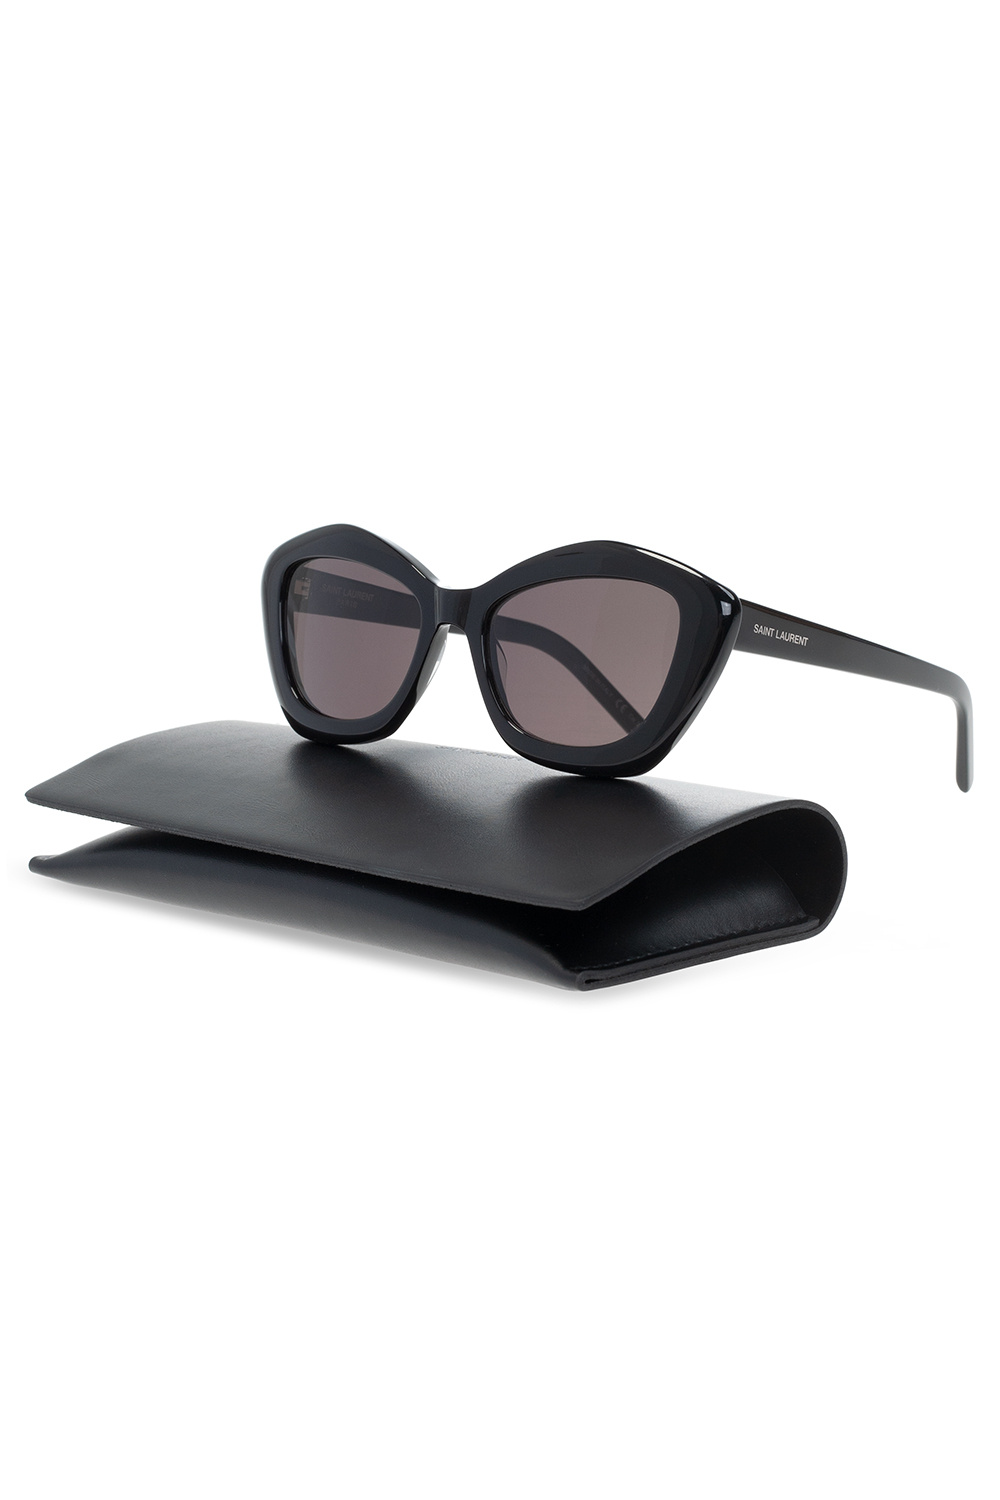 Saint Laurent ‘SL 68’ Dolce sunglasses